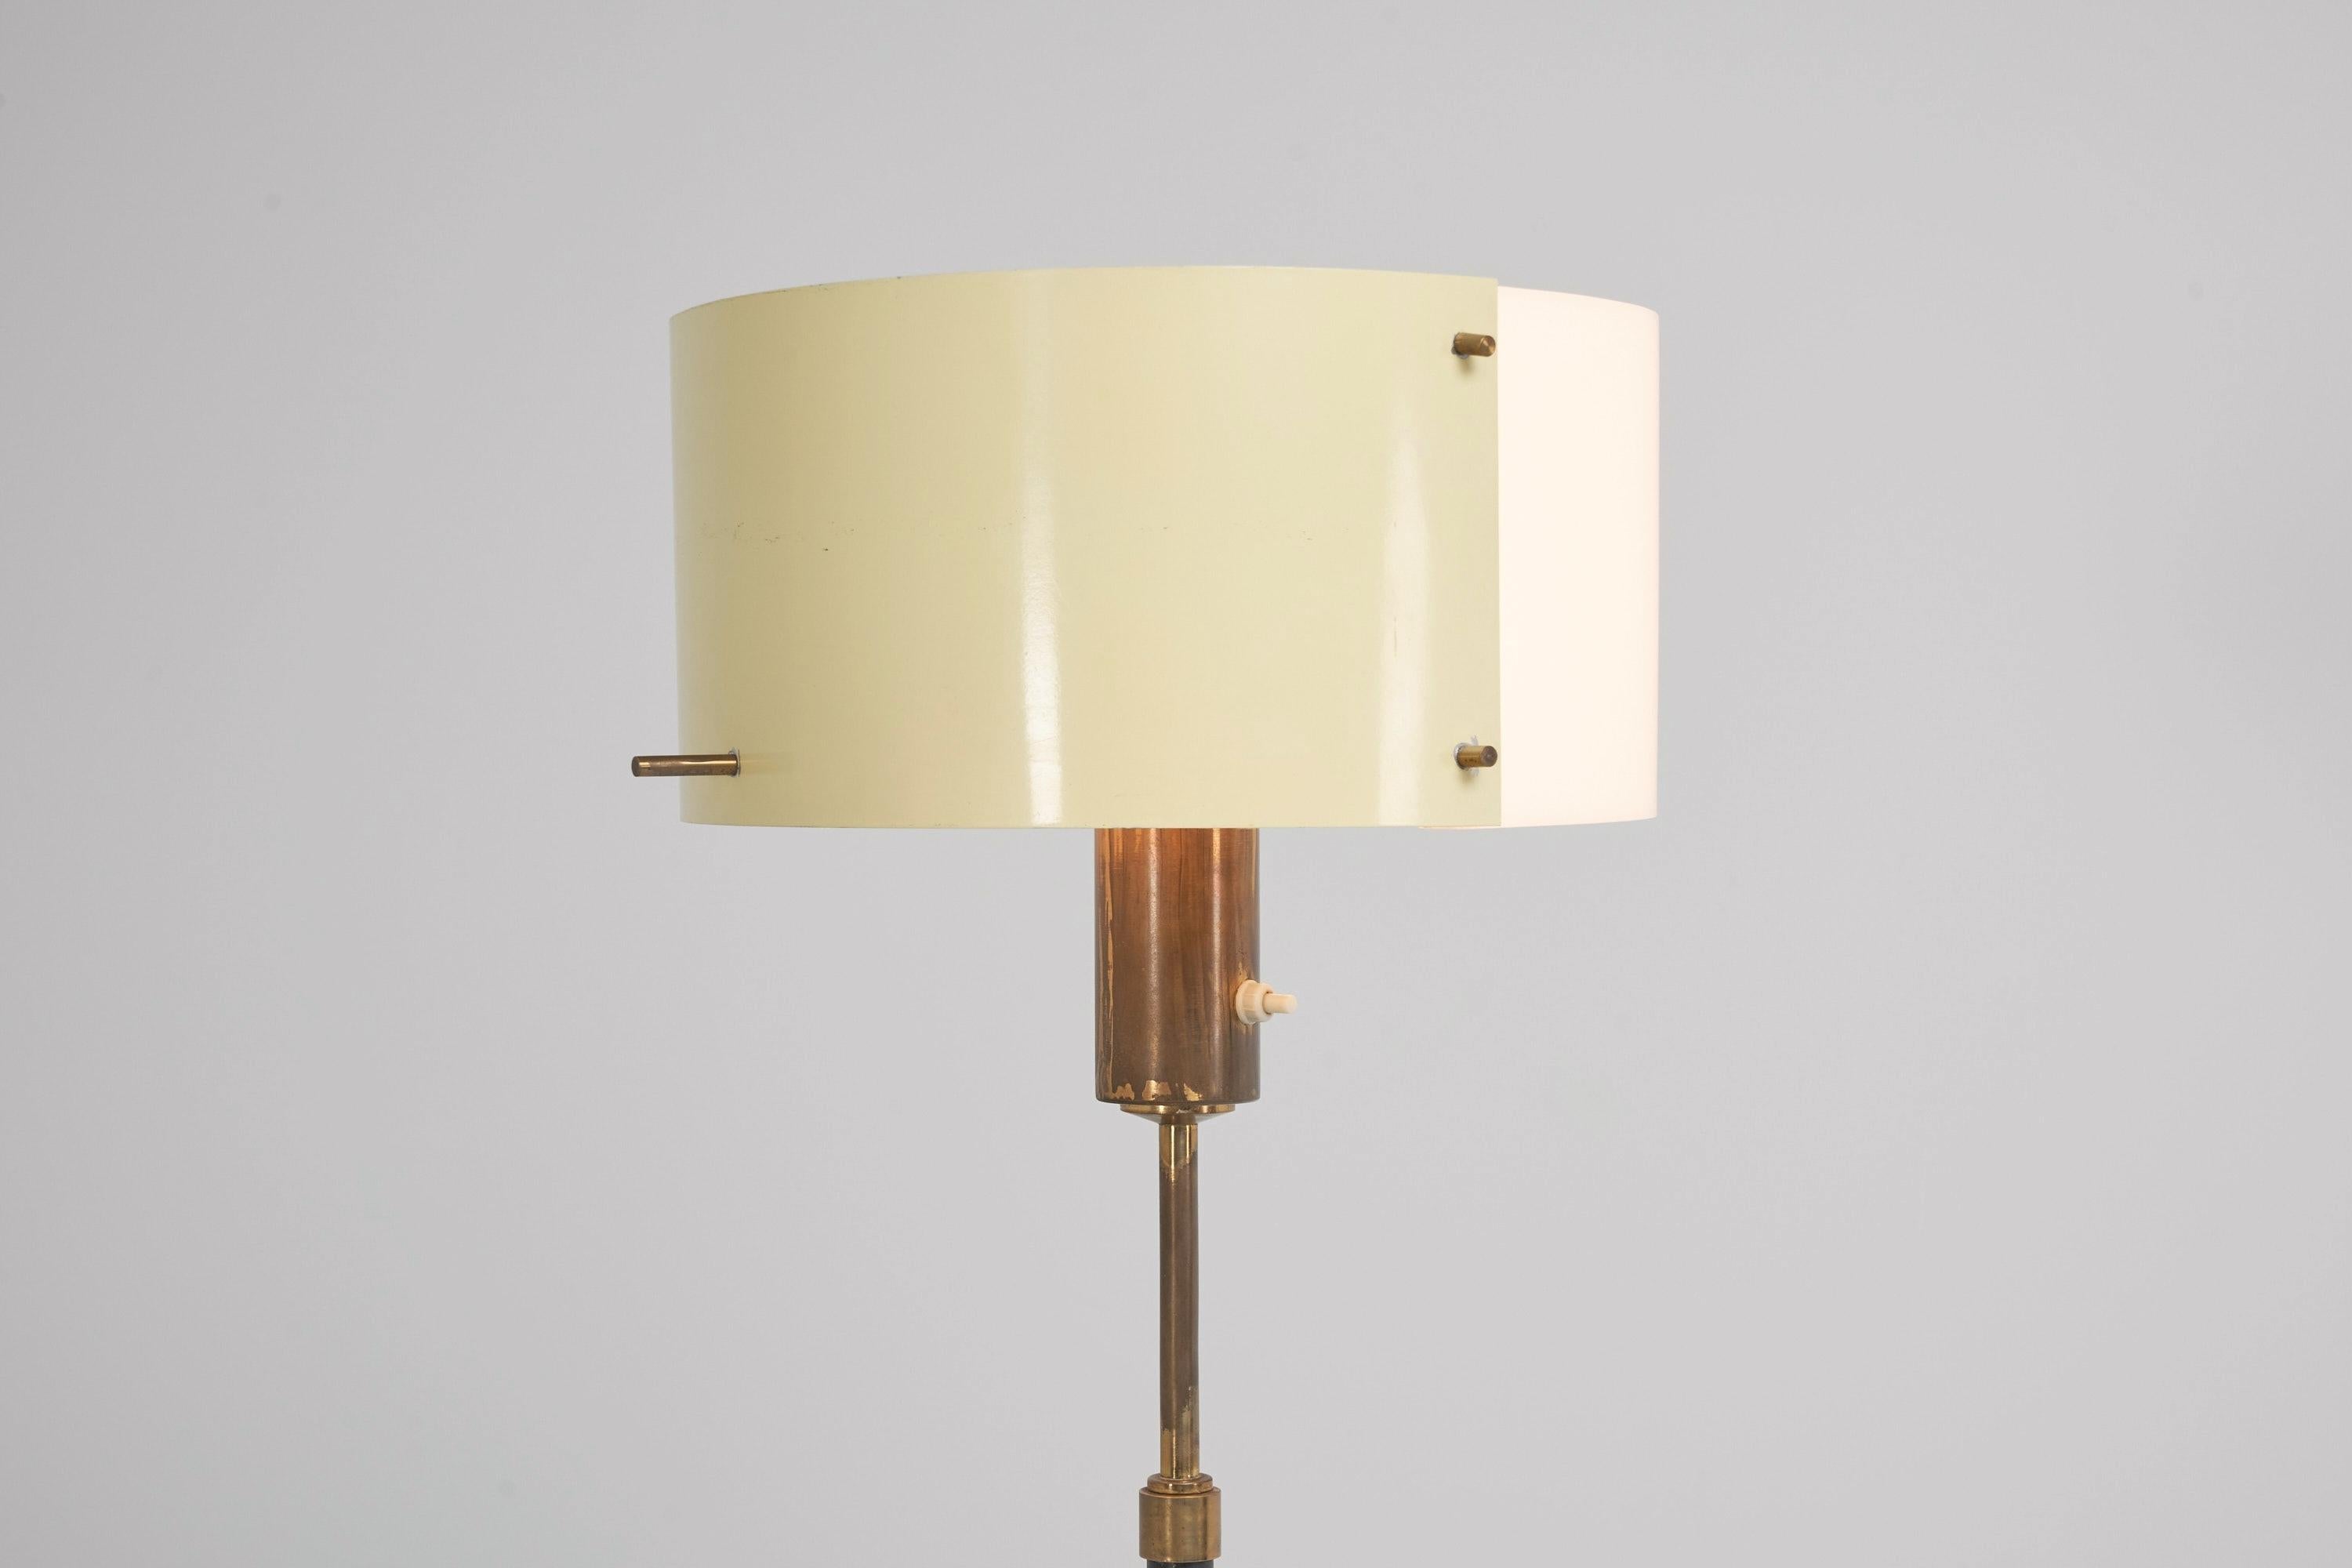 Lampadaire ajustable minimaliste conçu et fabriqué par Stilnovo, Italie 1950. Ce lampadaire a une base tripode en métal peint en noir, il a des pieds en laiton qui ressemblent aux trains d'atterrissage des vaisseaux spatiaux sur lesquels étaient